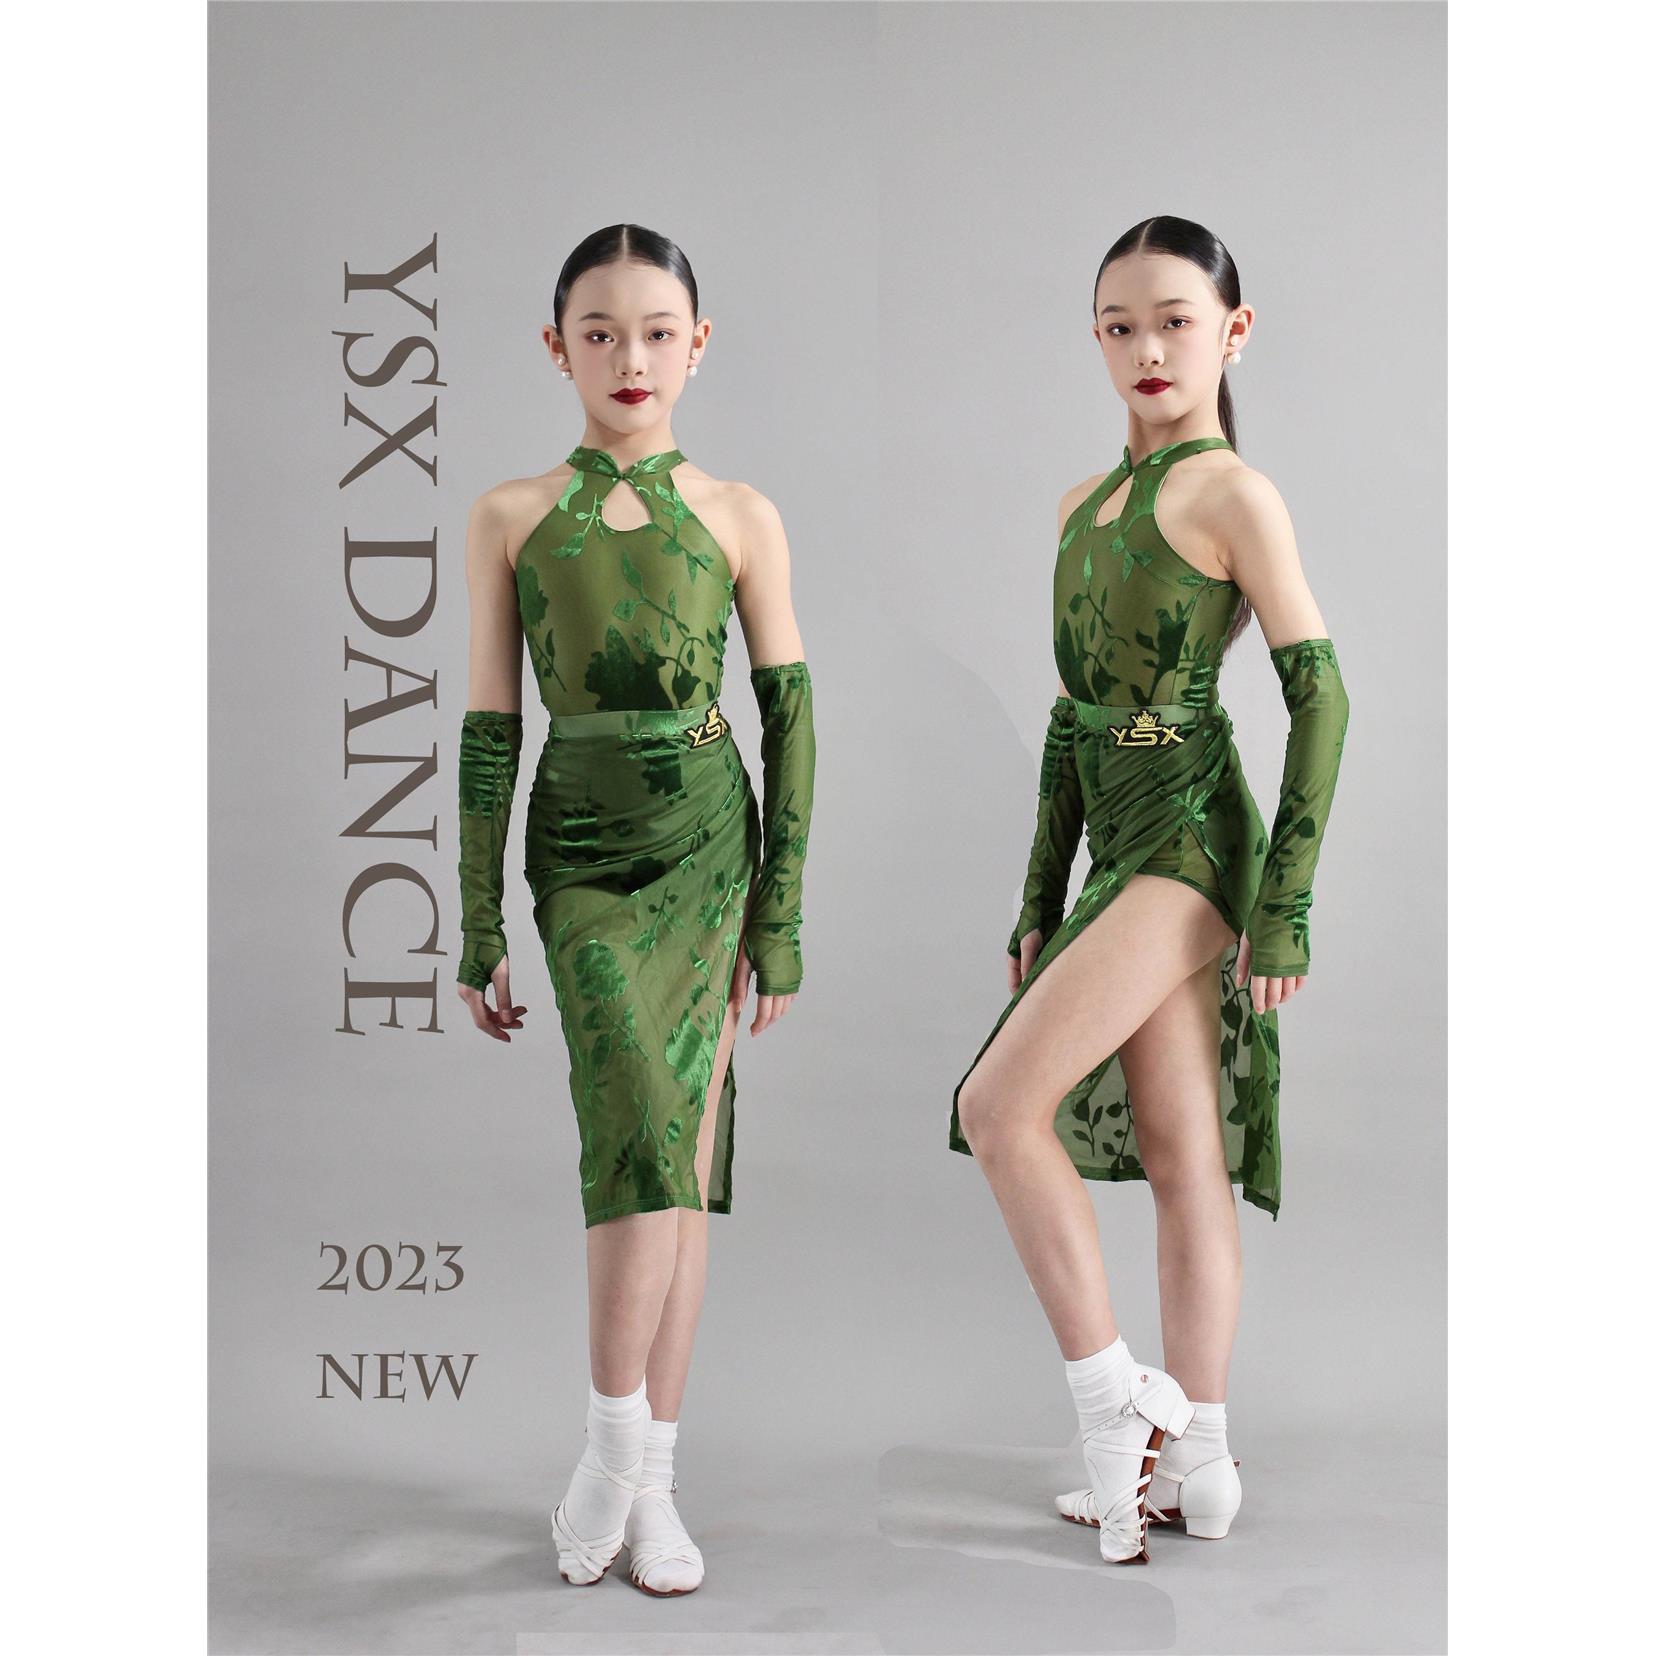 YSX DANCE新款拉丁舞蹈服旗袍款式烧花面料中国风连体裙表演服